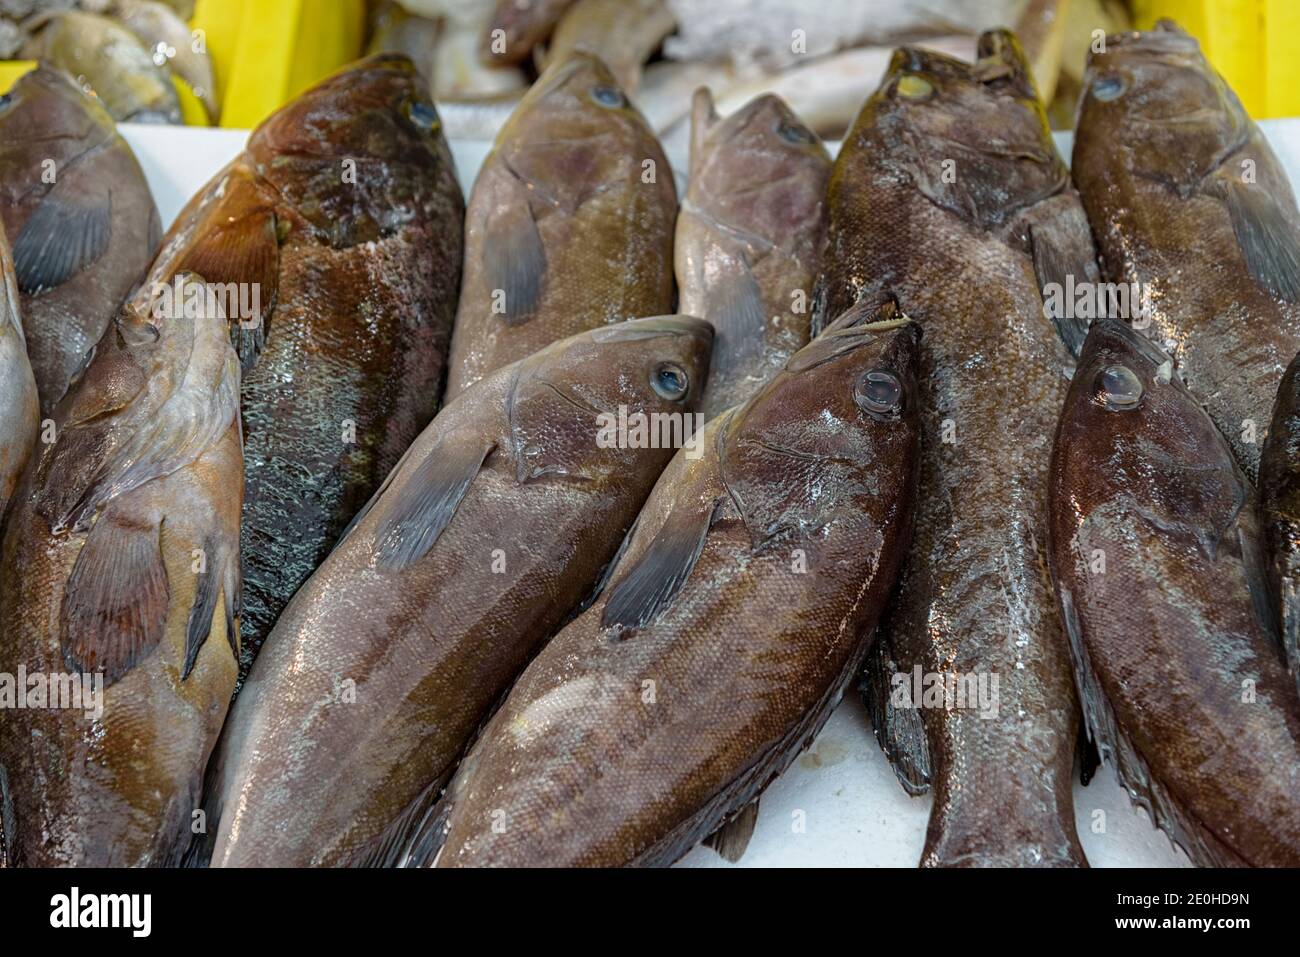 Locus, Stone Perch, Reef Cod, Dakar, Epinephelus è un genere di pesci della famiglia Serranidae che si trovano negli oceani Atlantico, Indiano, Pacifico. Mercato di pesce in Foto Stock